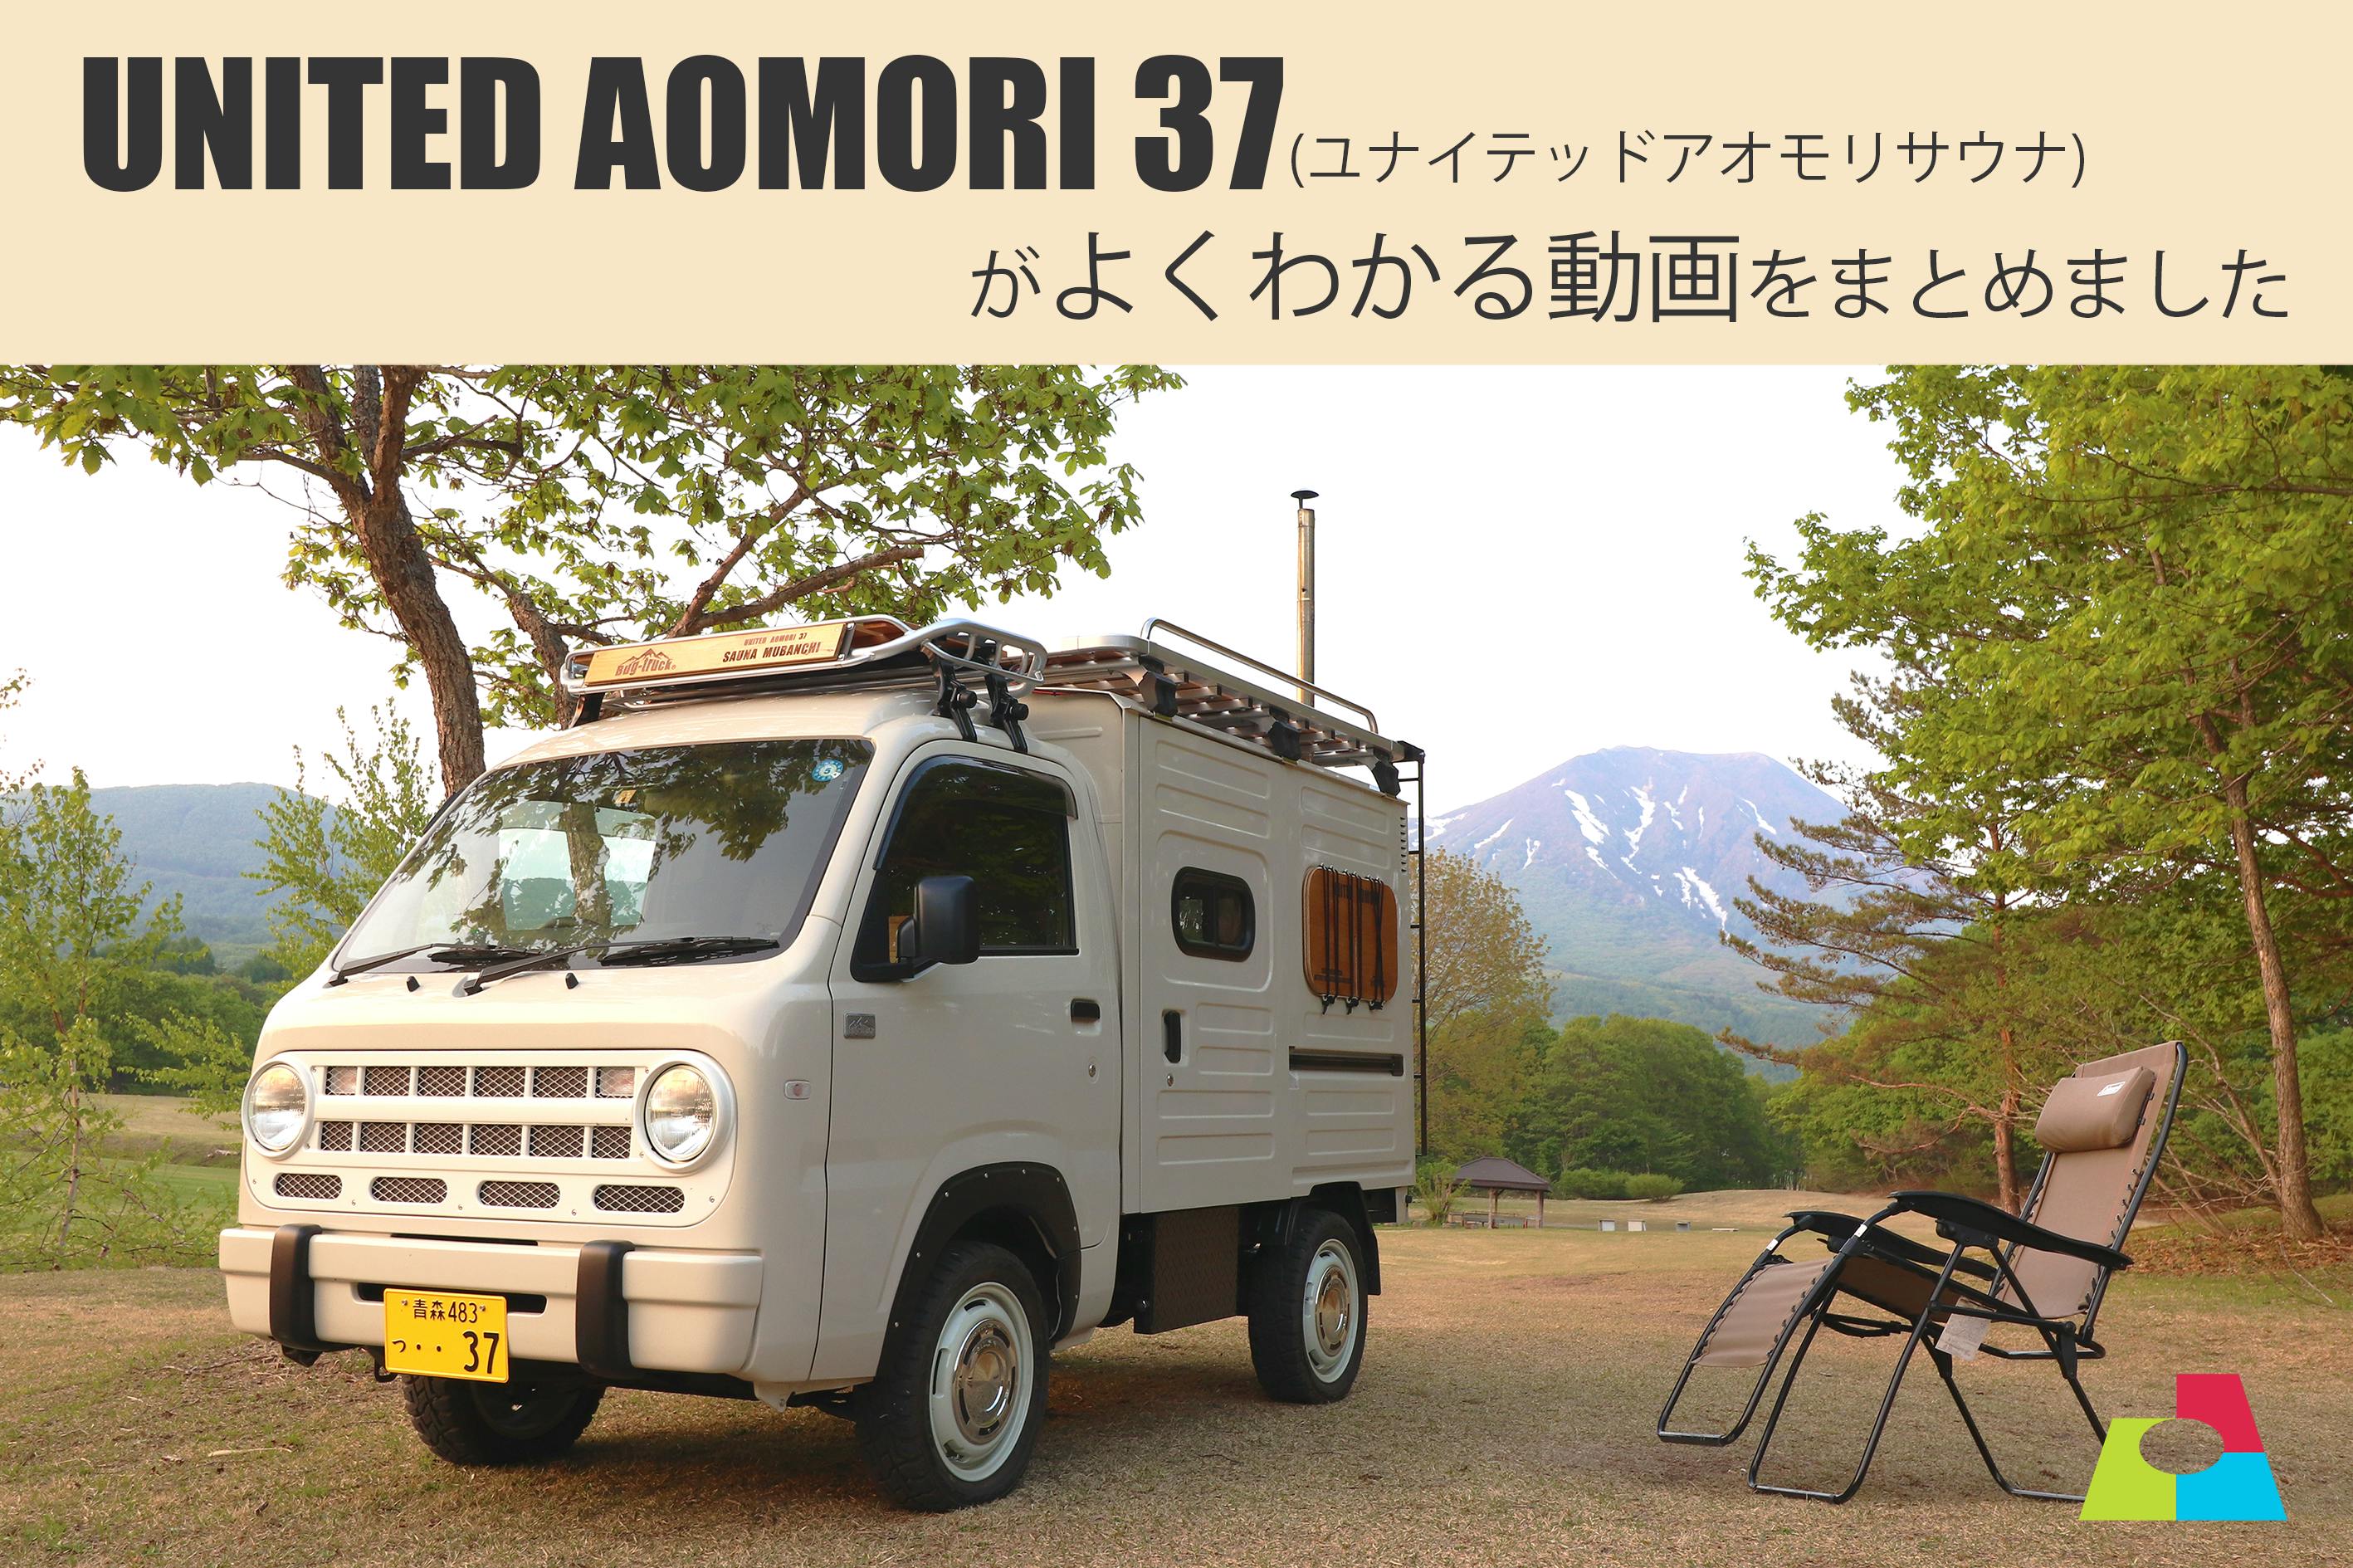 United Aomori37 ユナイテッドアオモリサウナ がよくわかる動画をまとめました Campfire キャンプファイヤー